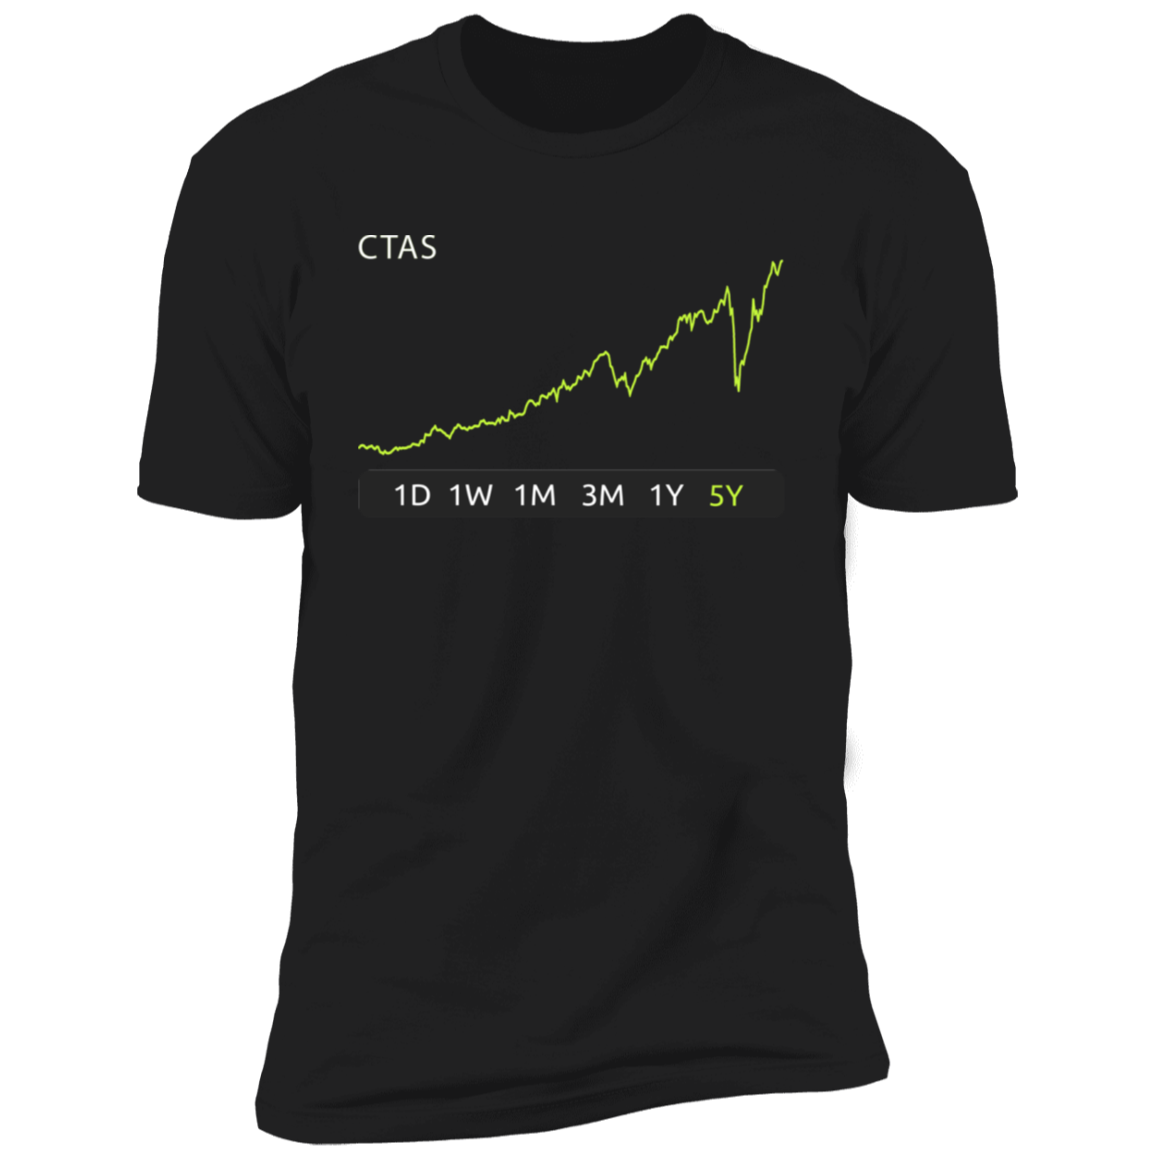 CTAS Stock 5y Premium T-Shirt